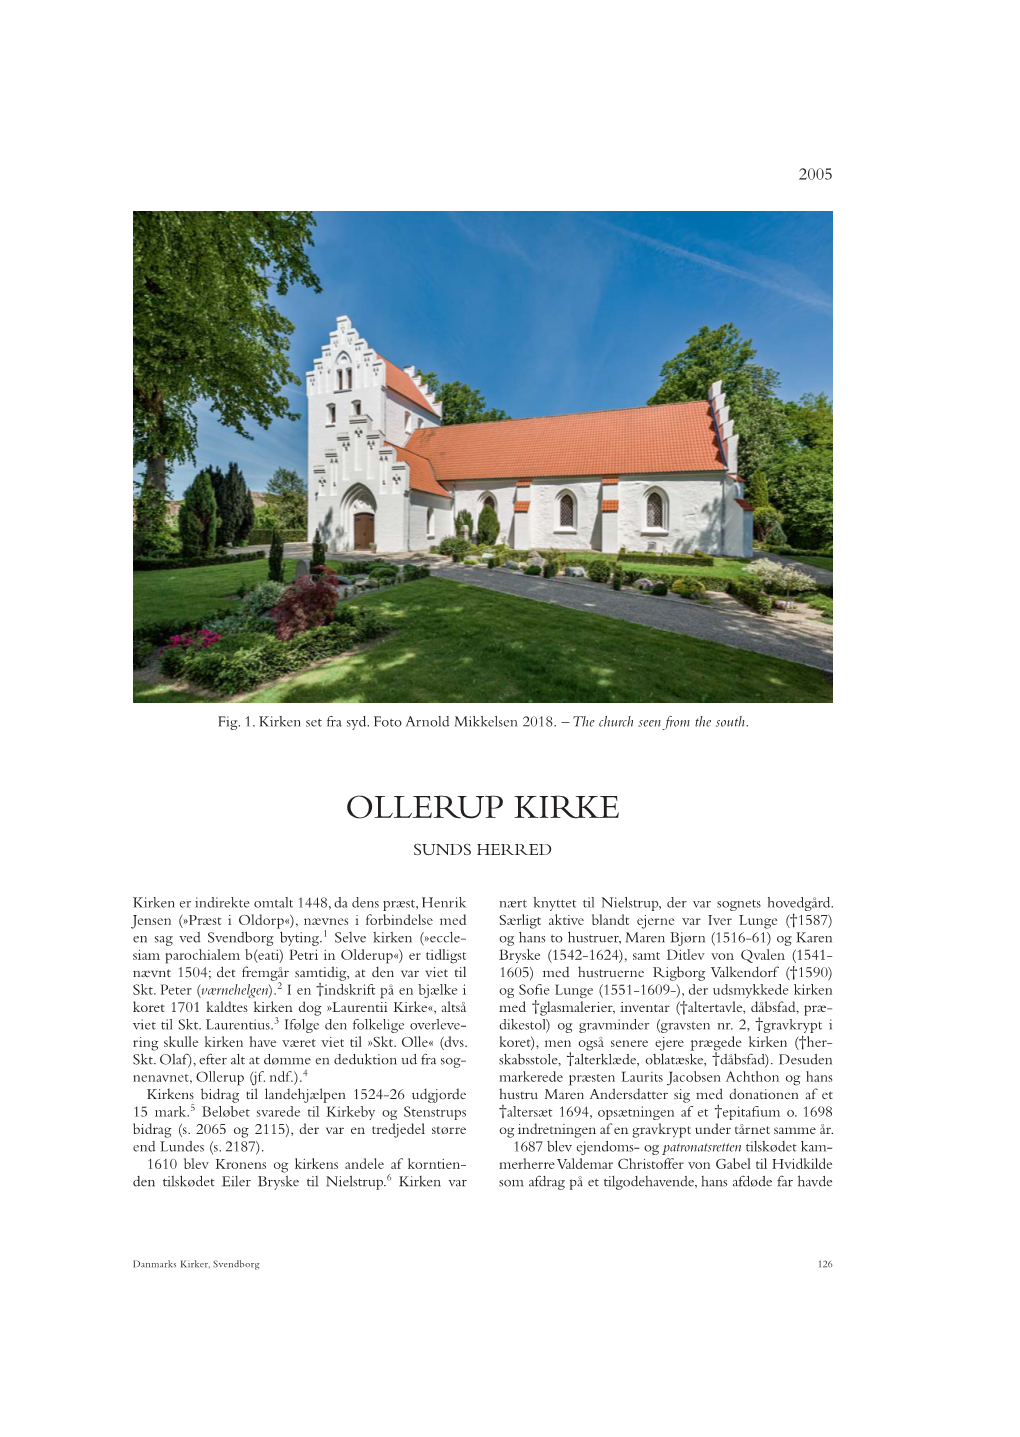 Ollerup Kirke Sunds Herred